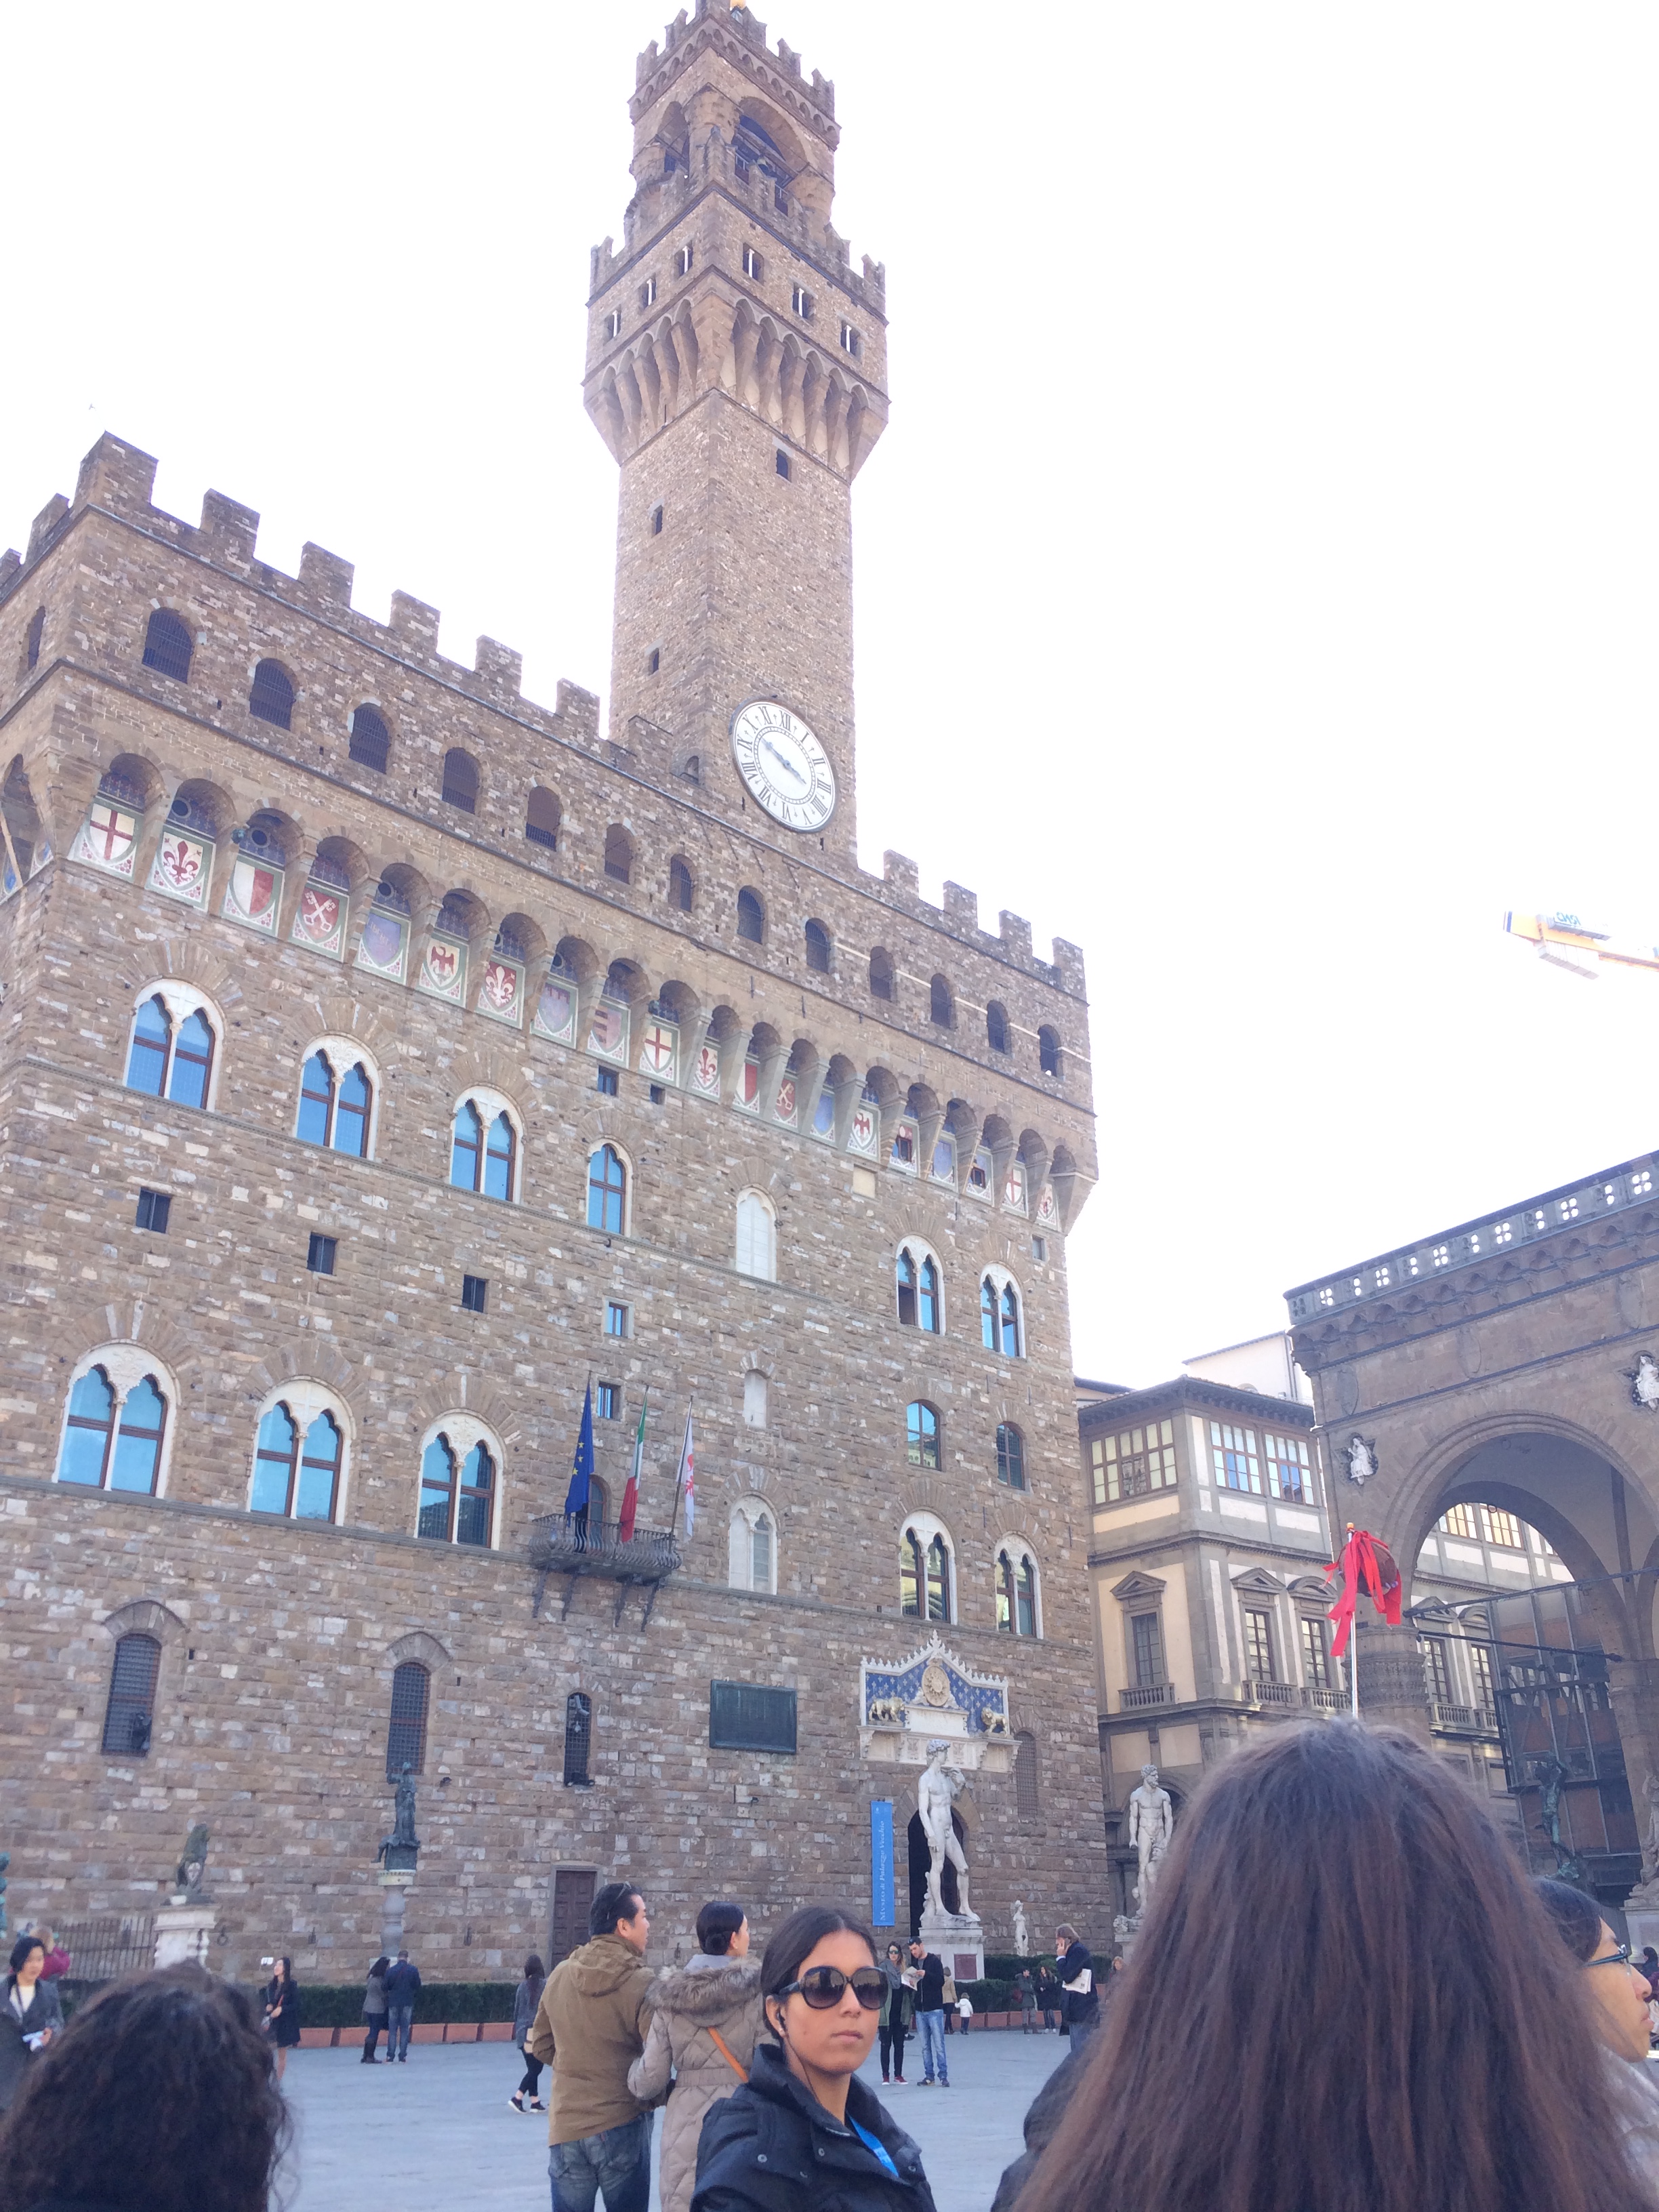 Image of the Palazzo Vecchio